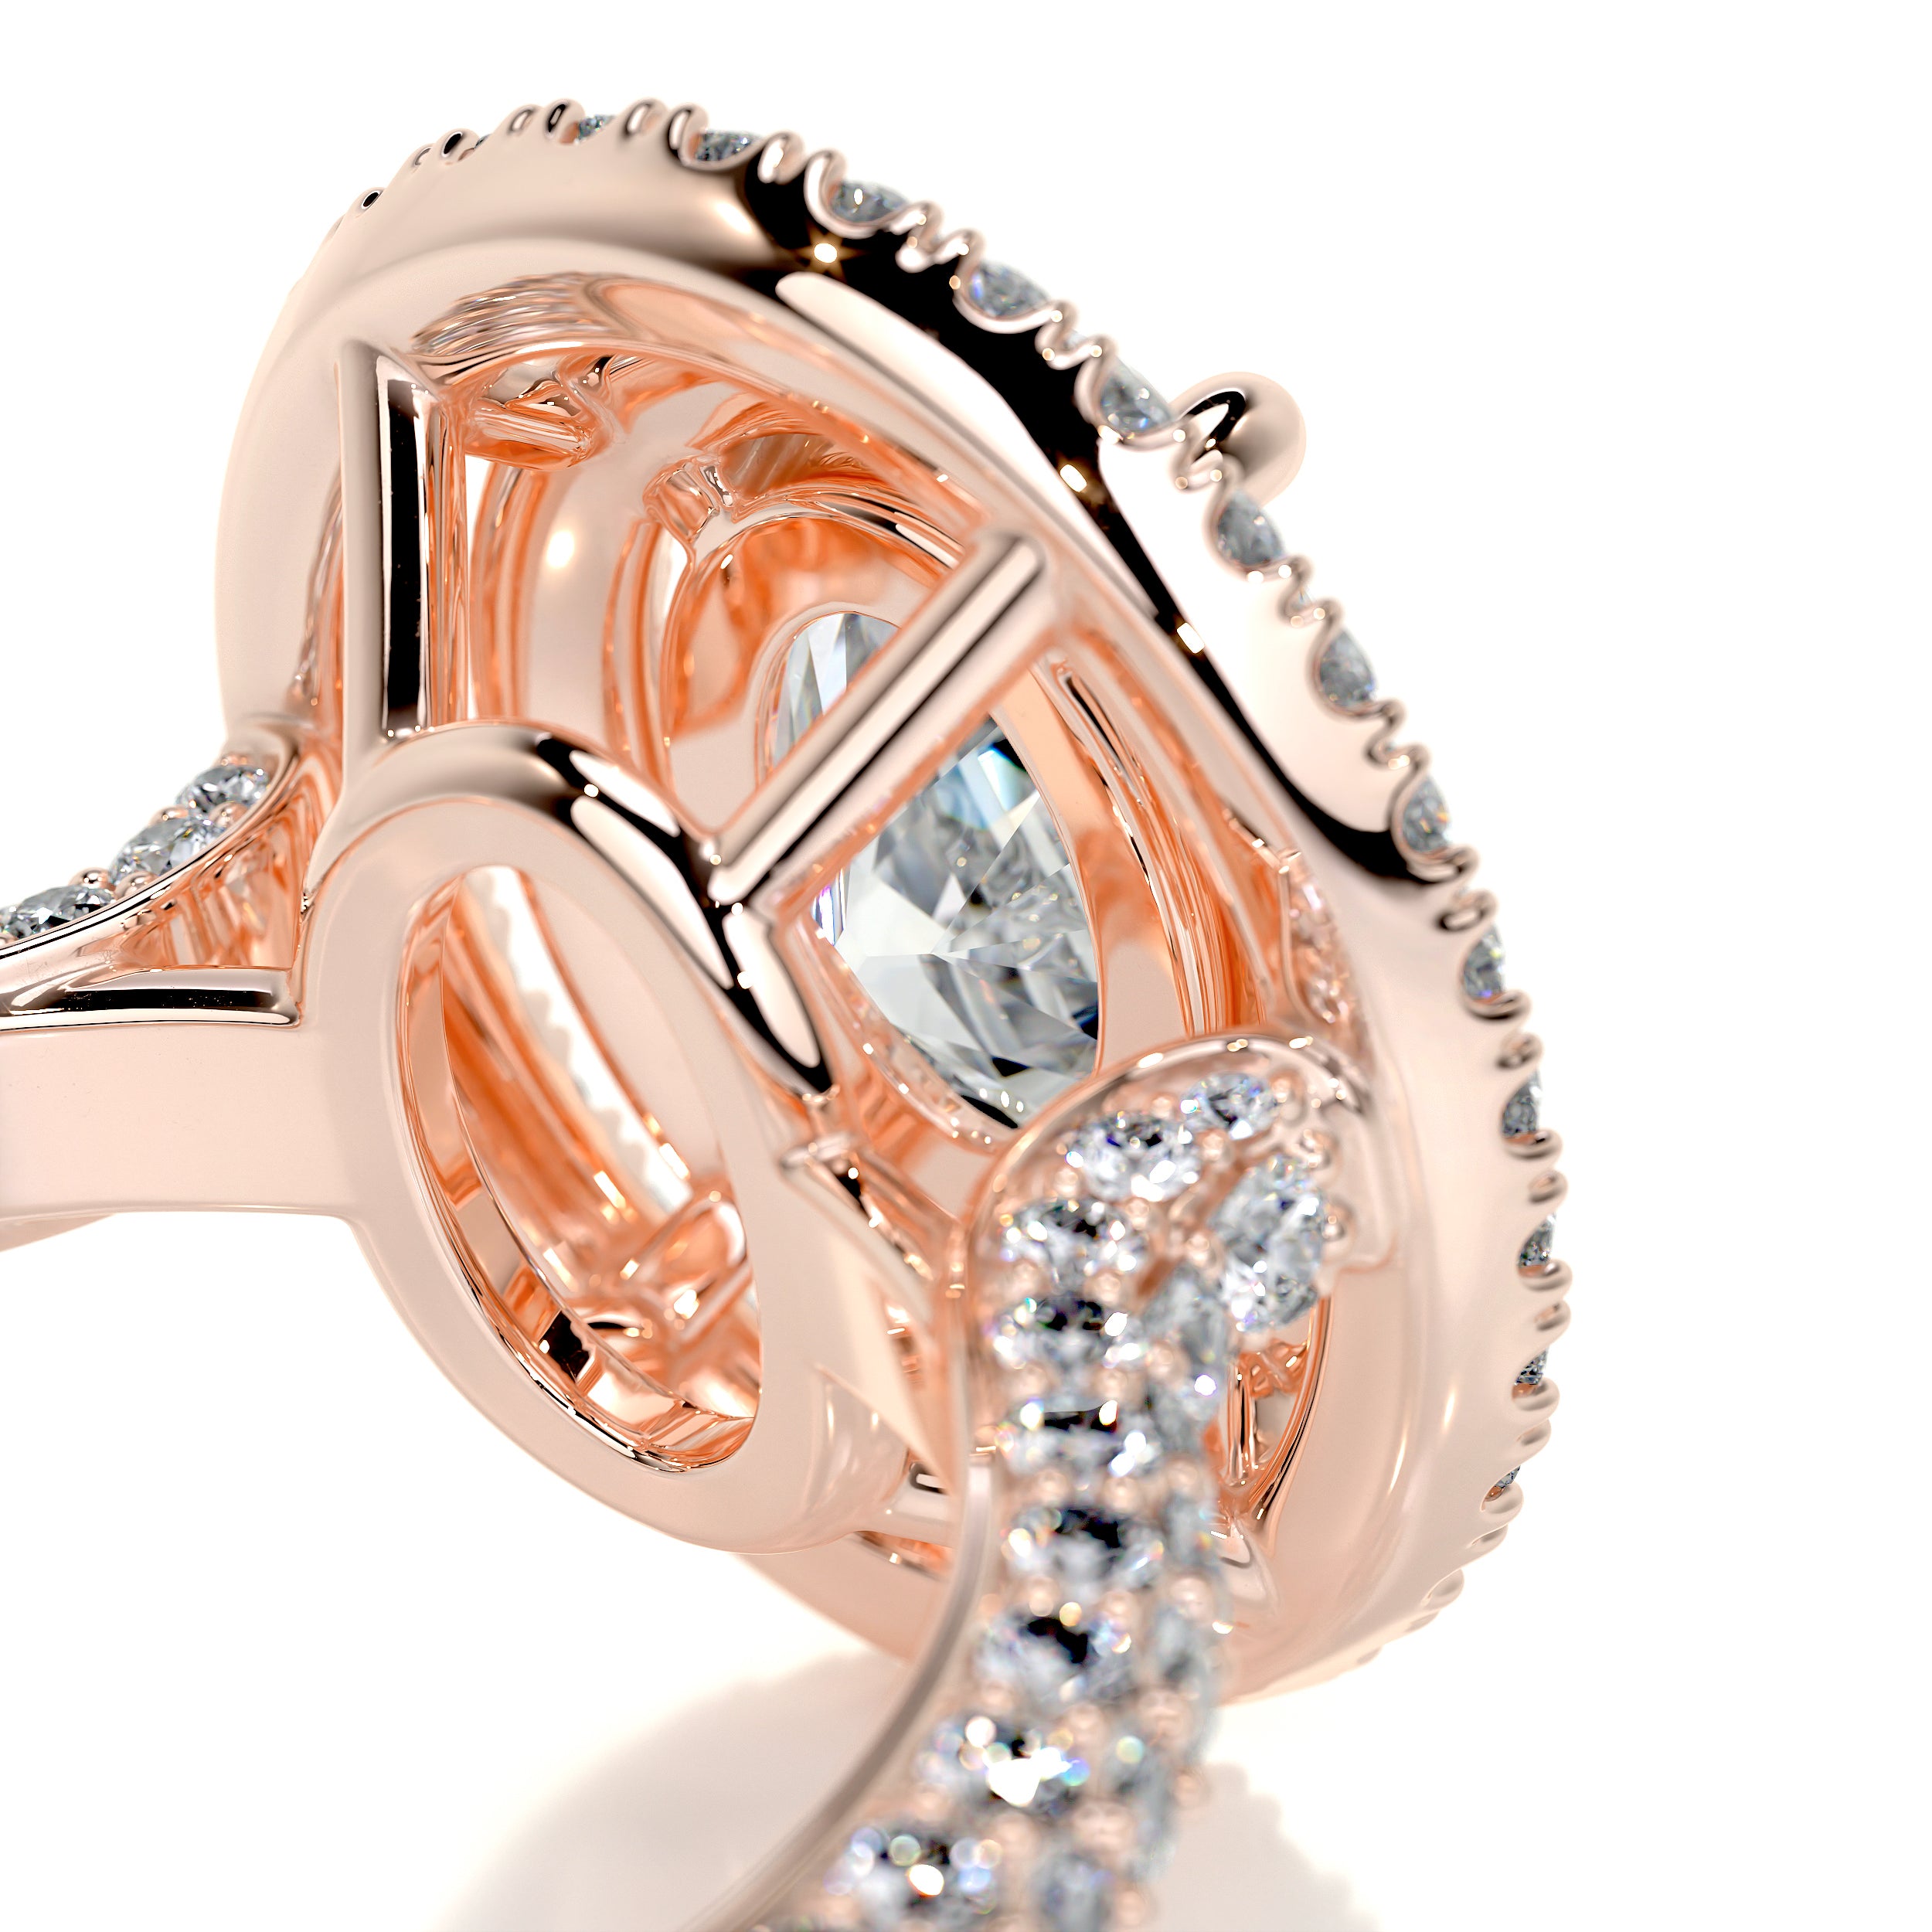 Nora Diamond Engagement Ring -14K Rose Gold